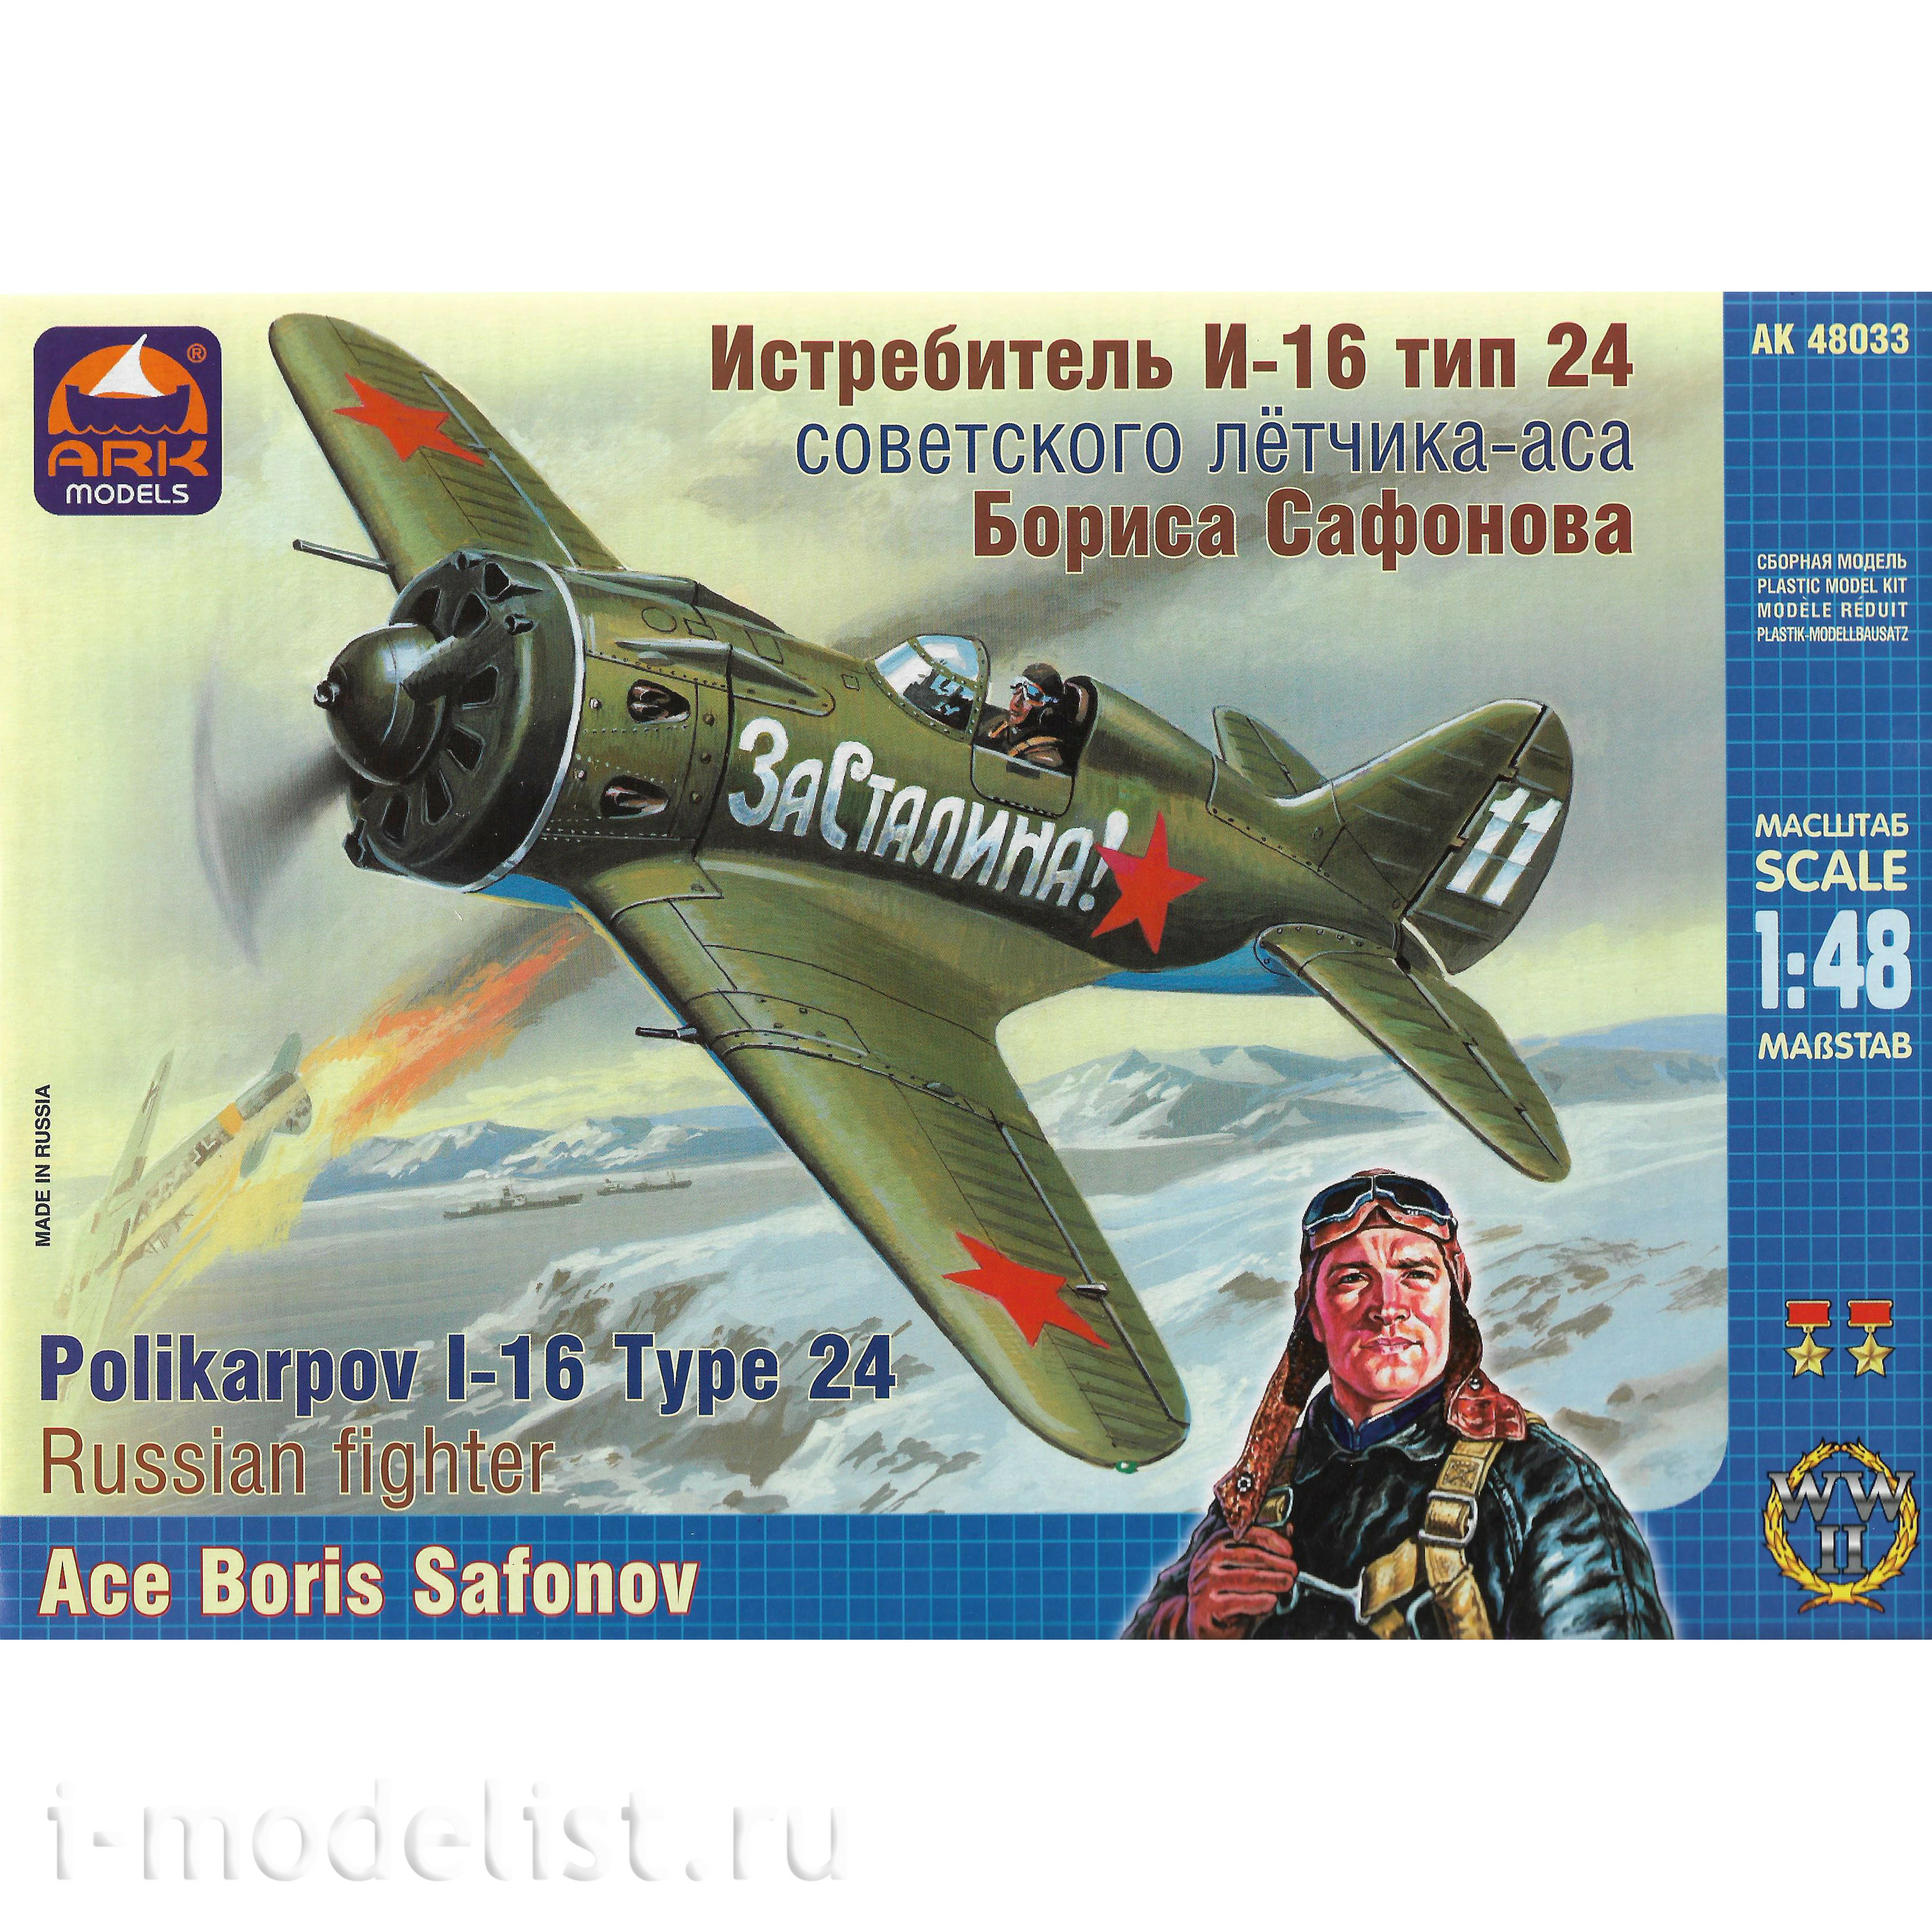 48033 ARK-models 1/48 Истребитель И-16 тип 24 советского летчика аса Бориса Сафонова